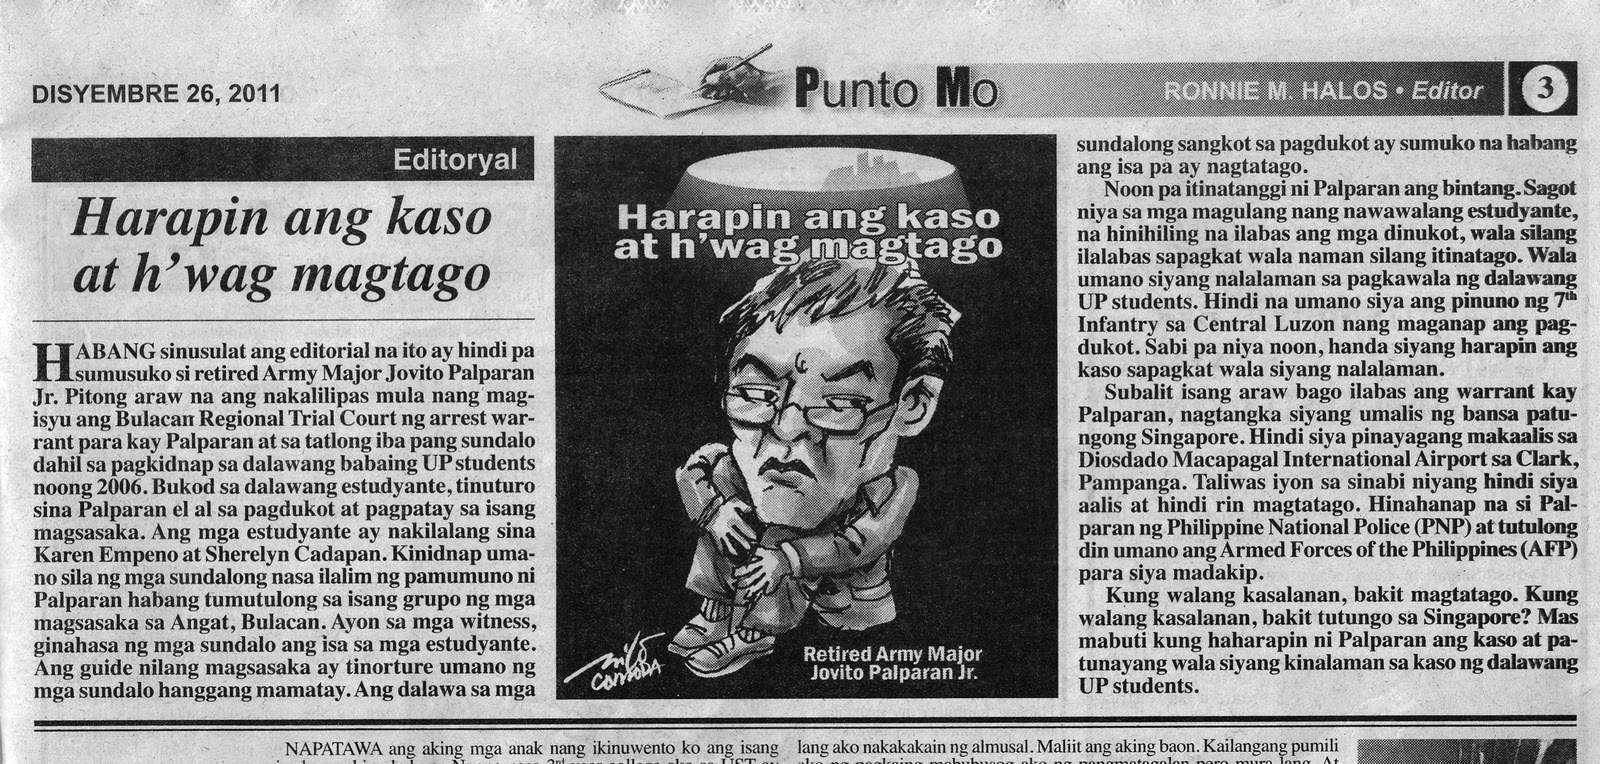 editoryal tagalog - philippin news collections